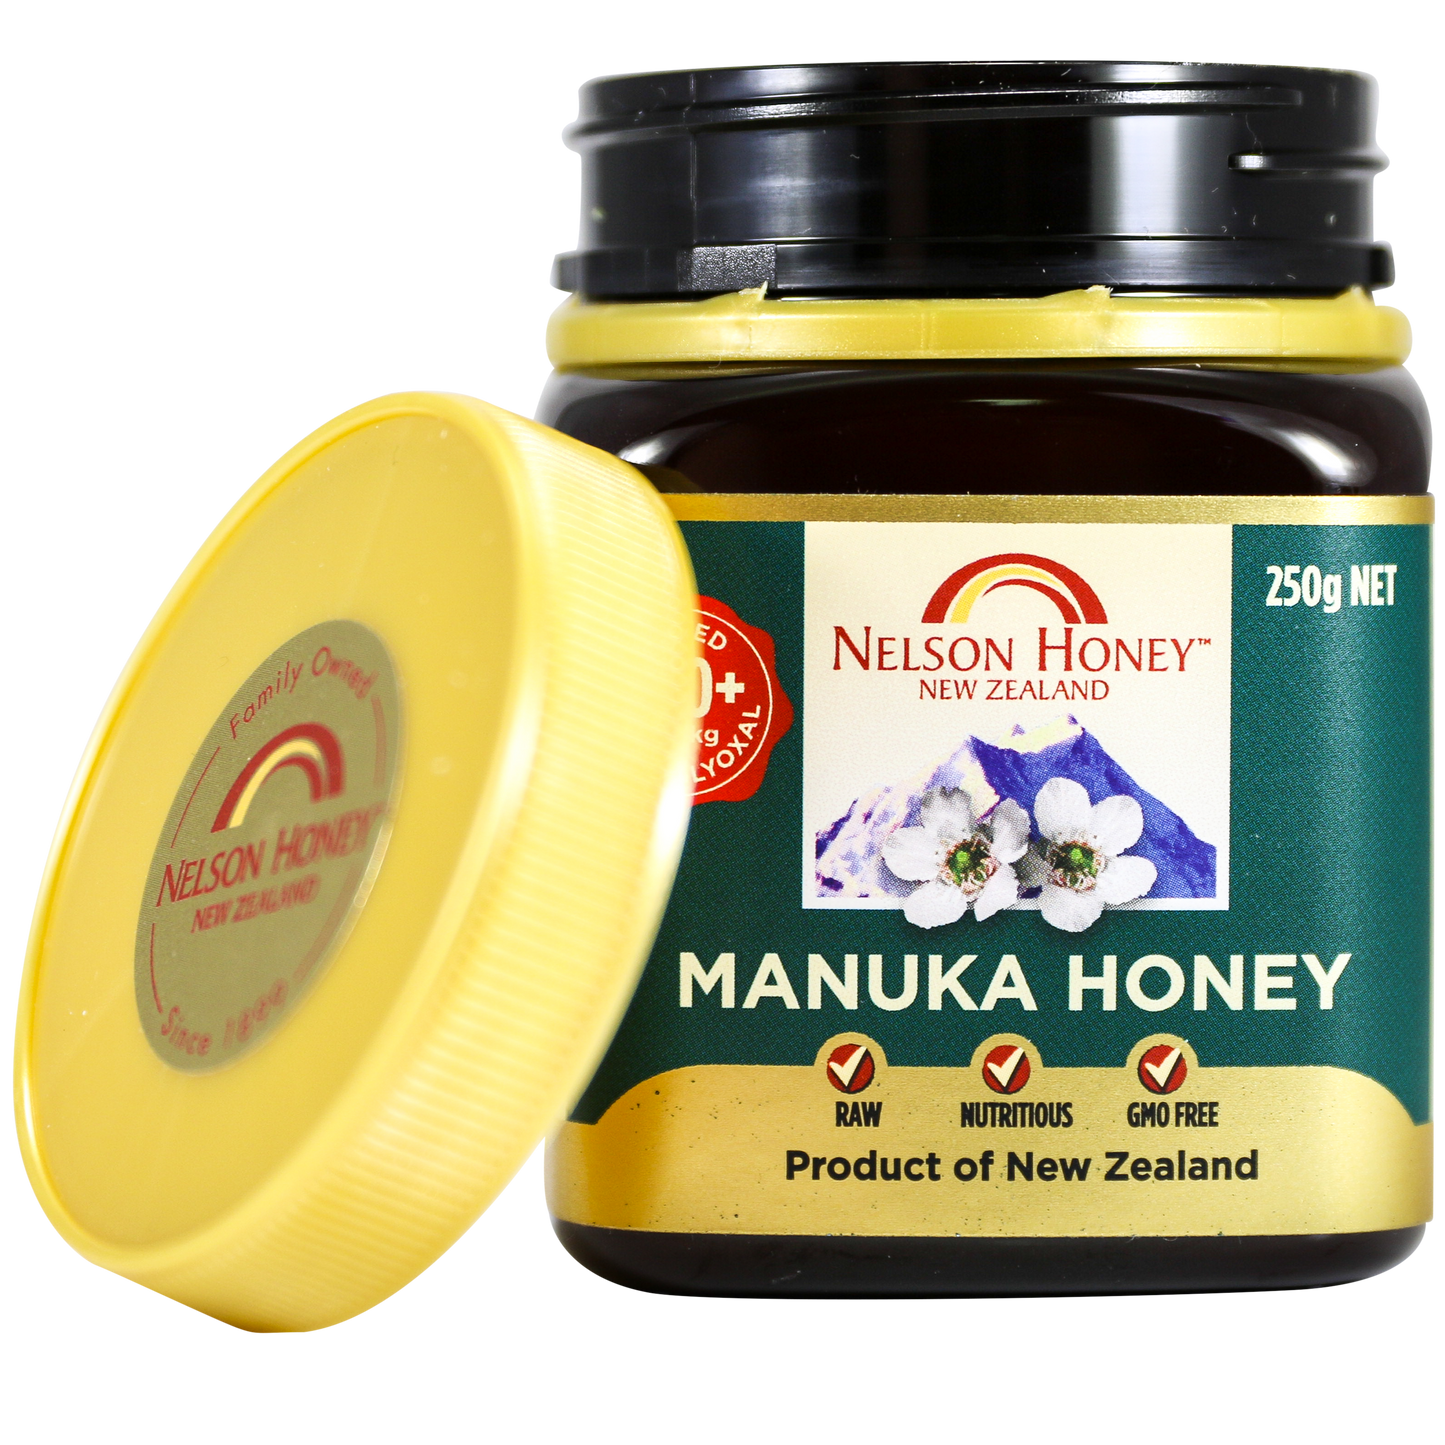 Manuka Honey 30+ 250g